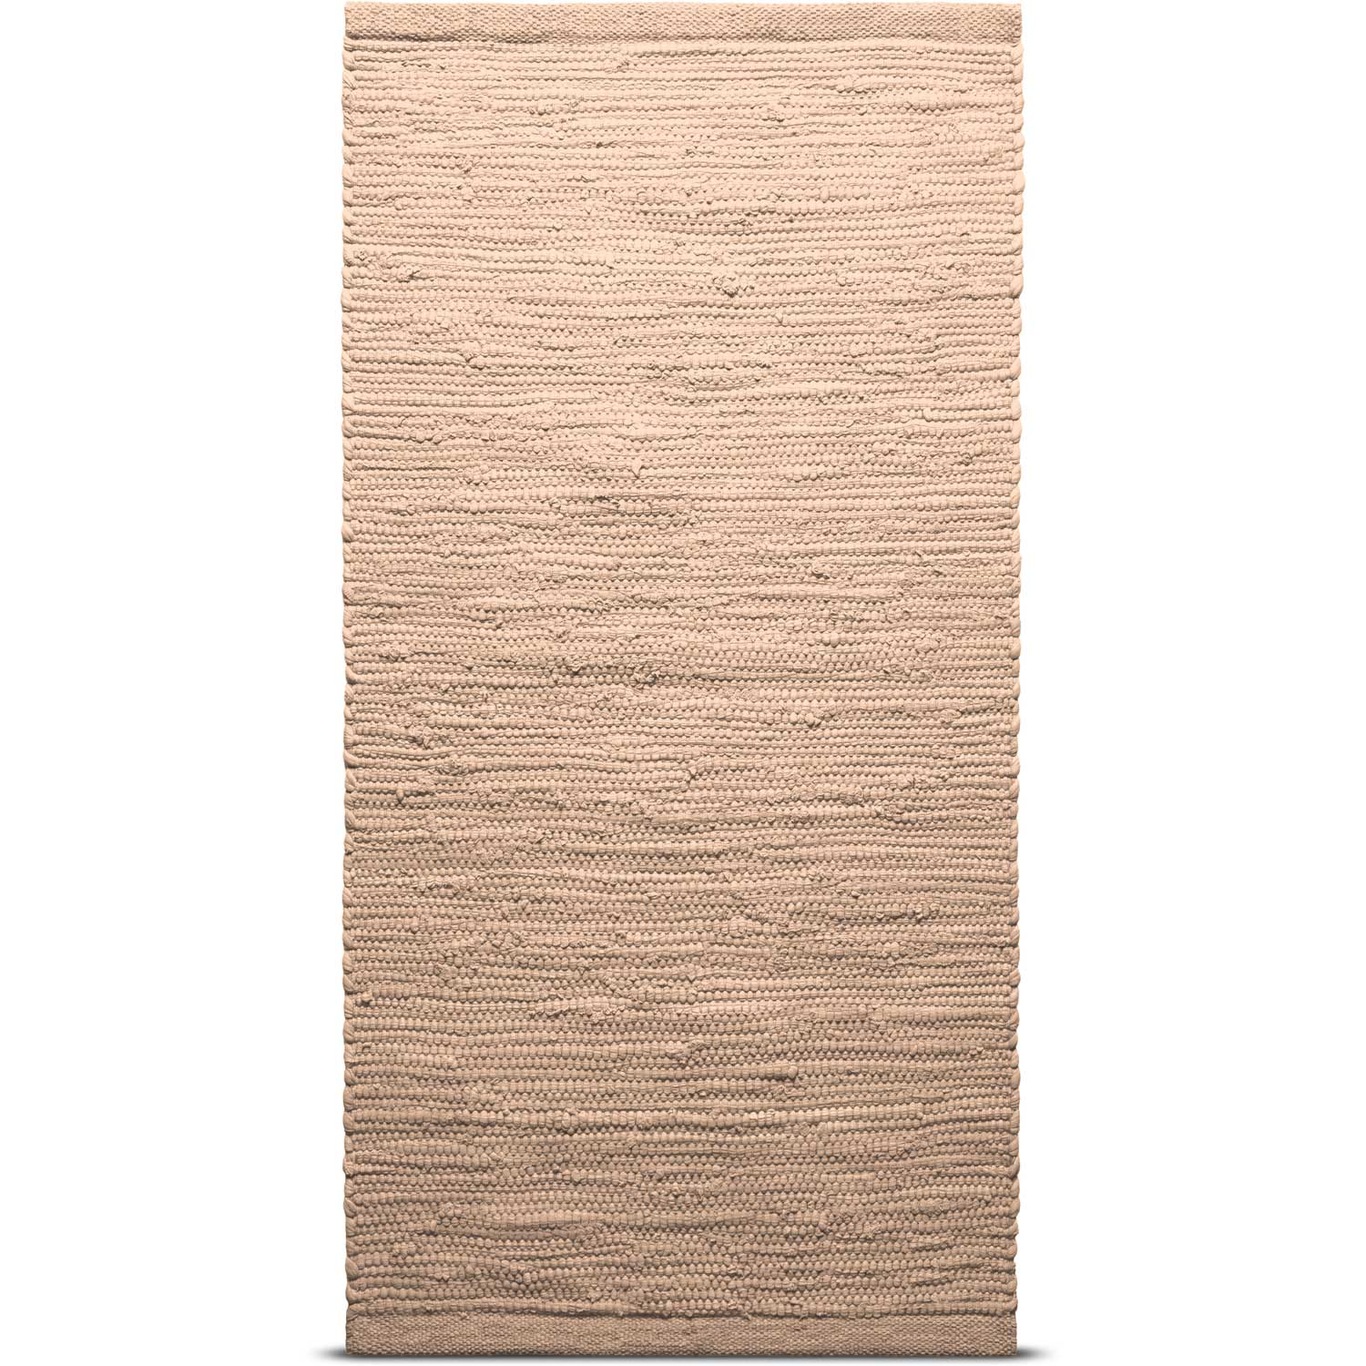 marts nok realistisk Cotton Tæppe Soft Peach, 75x200 cm - Rug Solid @ RoyalDesign.dk